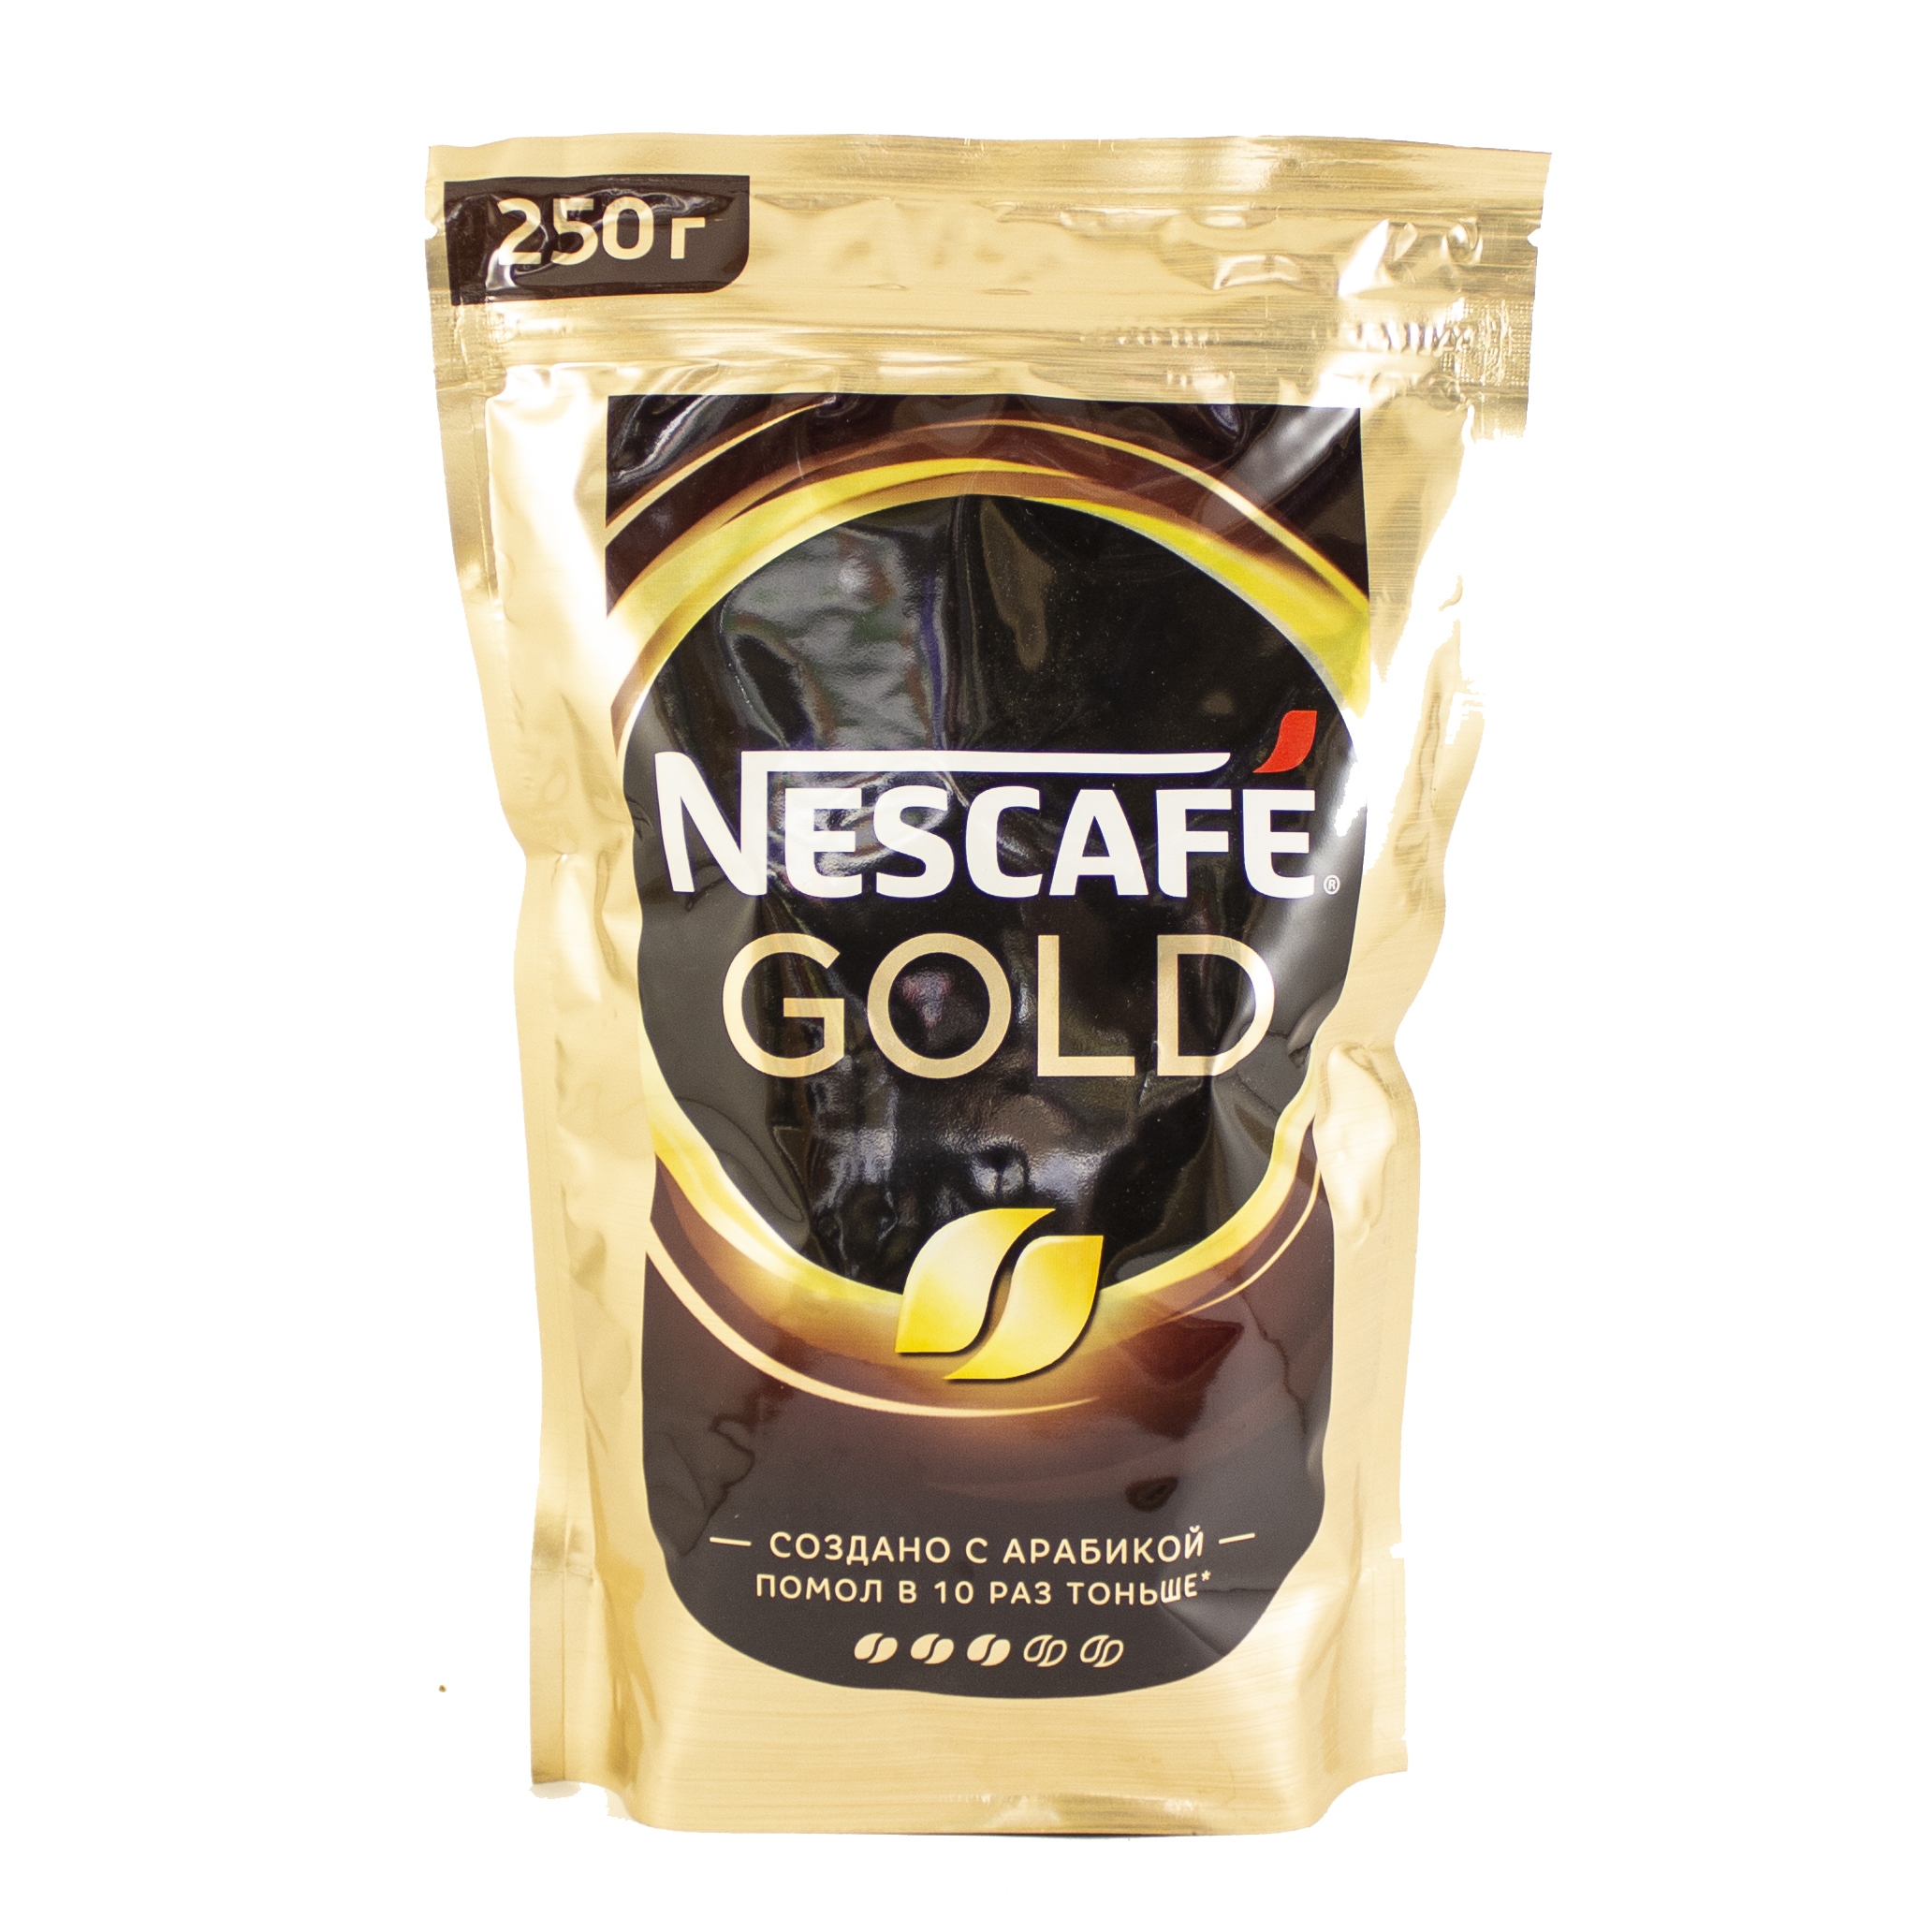 250 gold. Кофе Нескафе Голд 220г пакет. Нескафе Голд 220 грамм. Кофе Nescafe Gold 220 г. Кофе Nescafe Gold растворимый 220г.